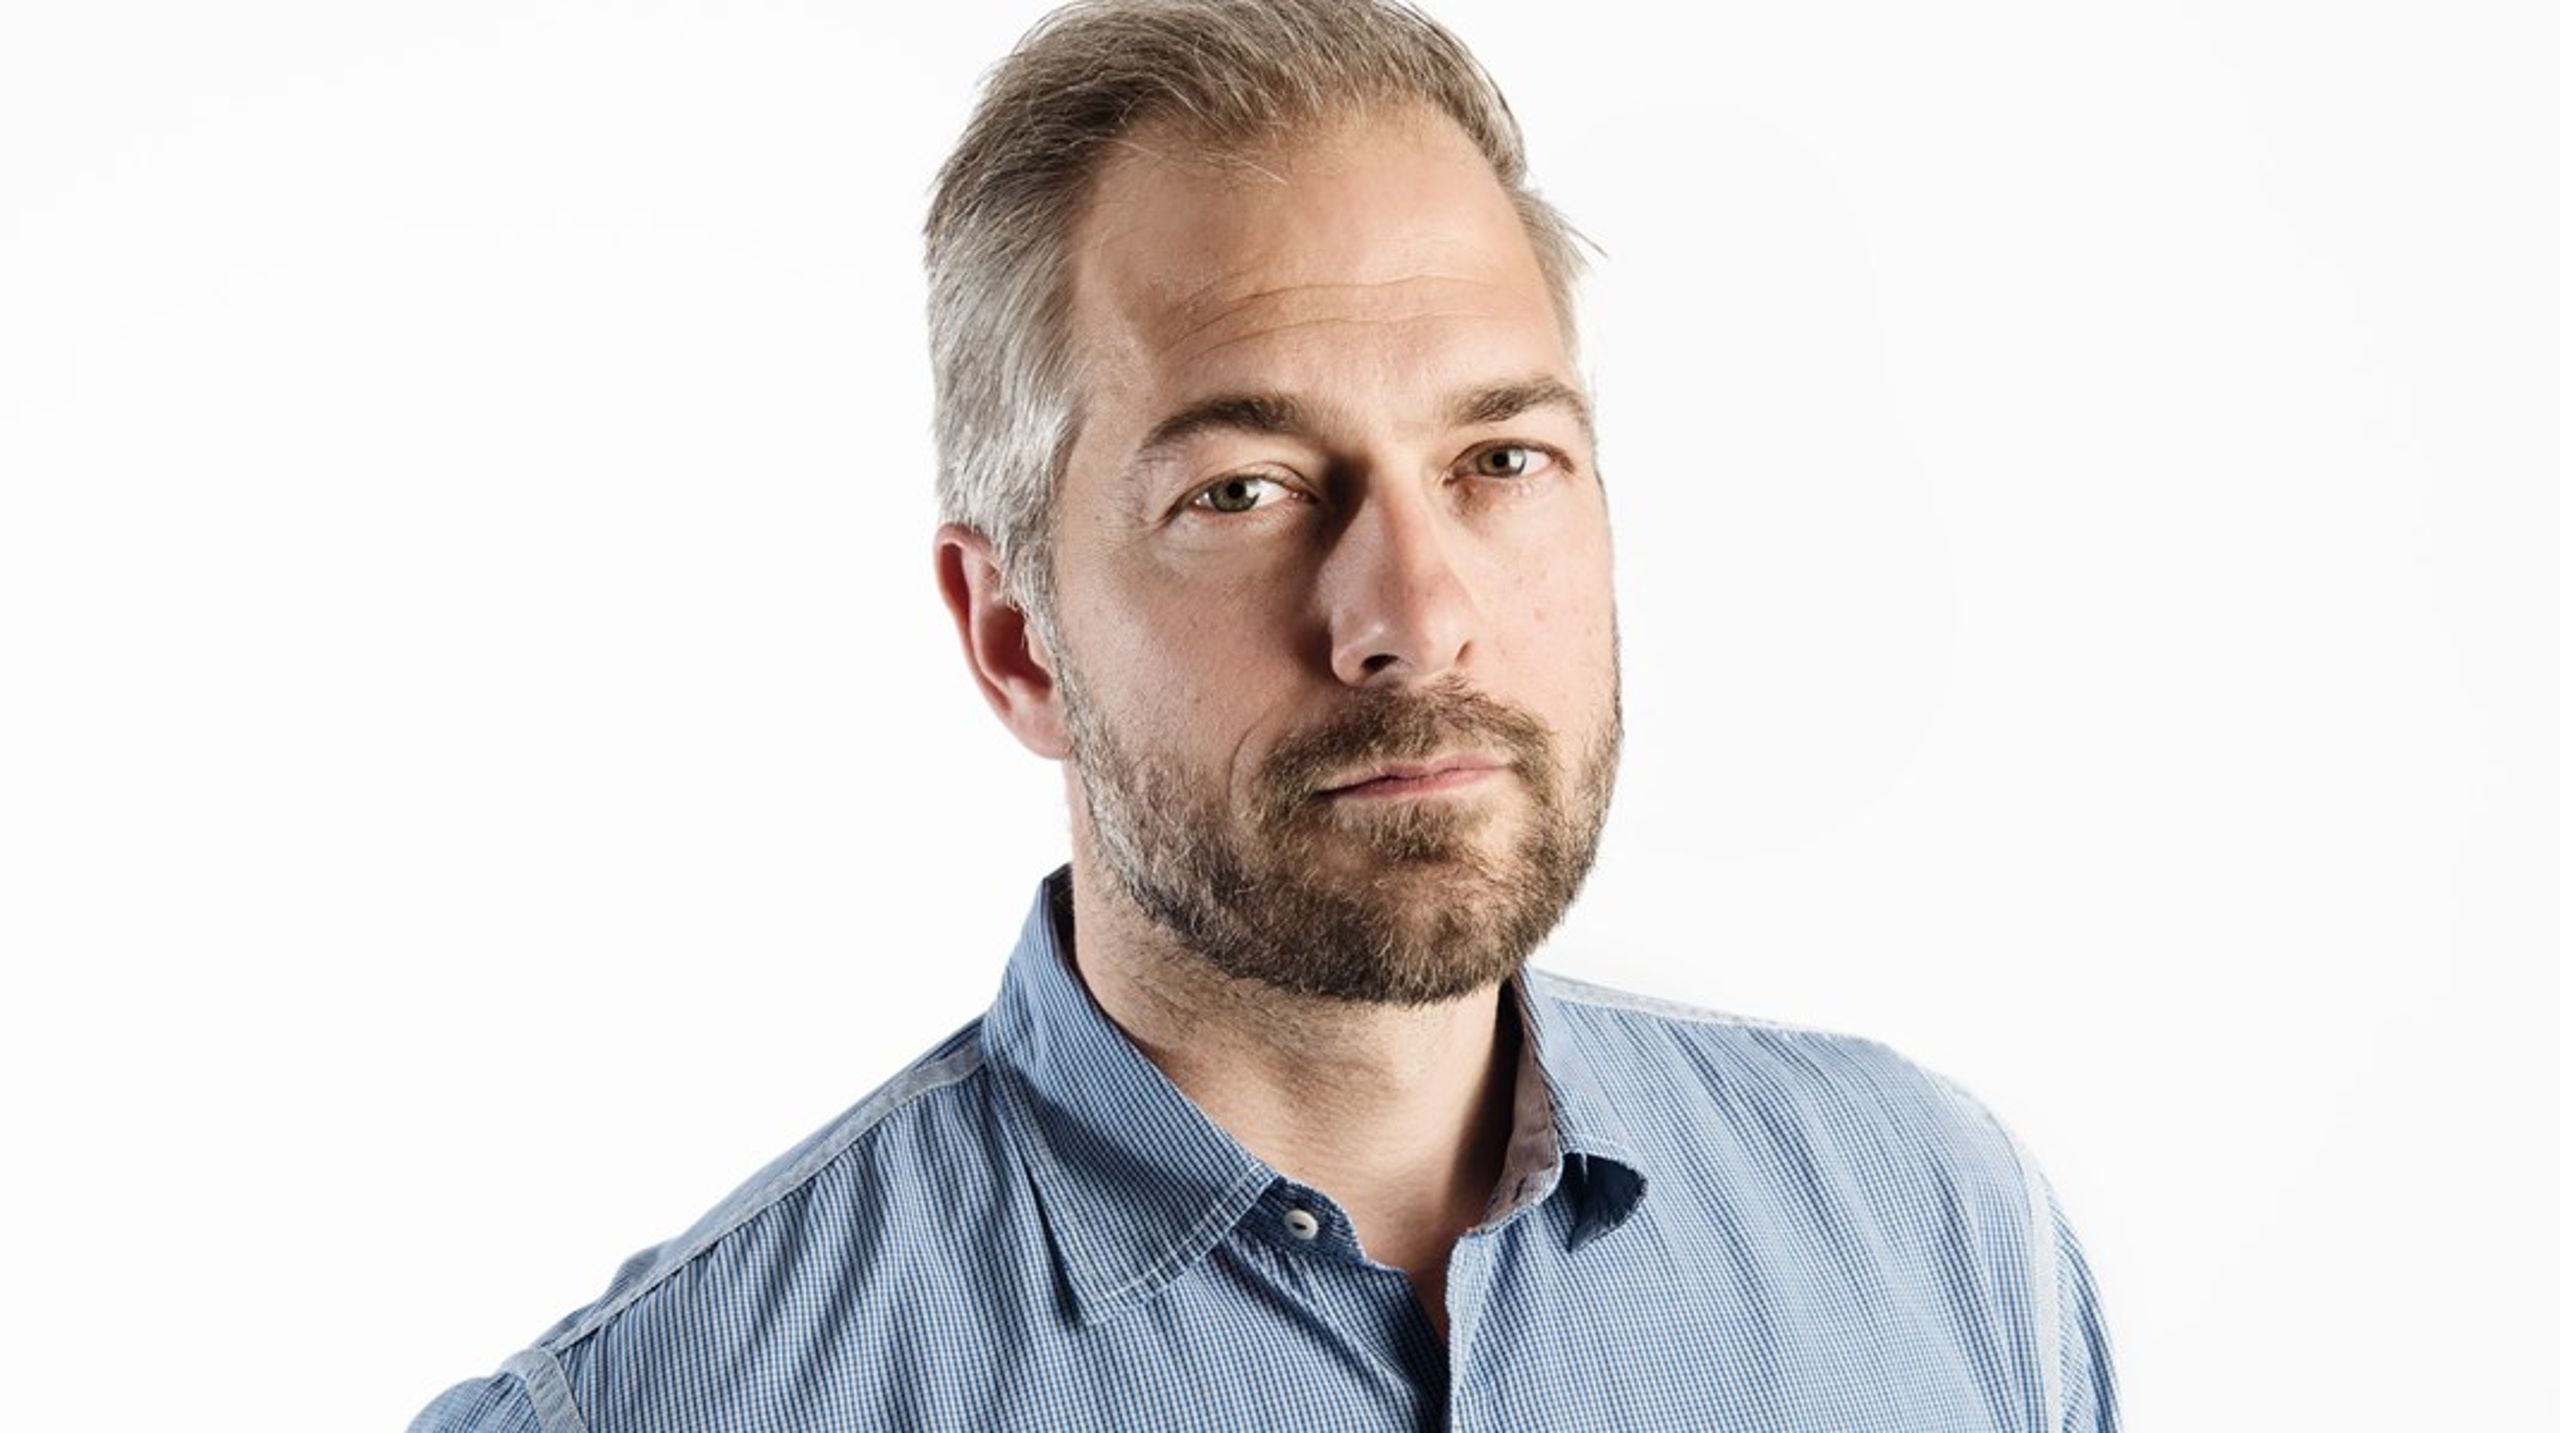 Teknologiens Mediehus har nu ansat Jonas Kuld Rathje som ny chefredaktør, efter at Trine Reitz Bjerregaard forlod stillingen i november.<br>